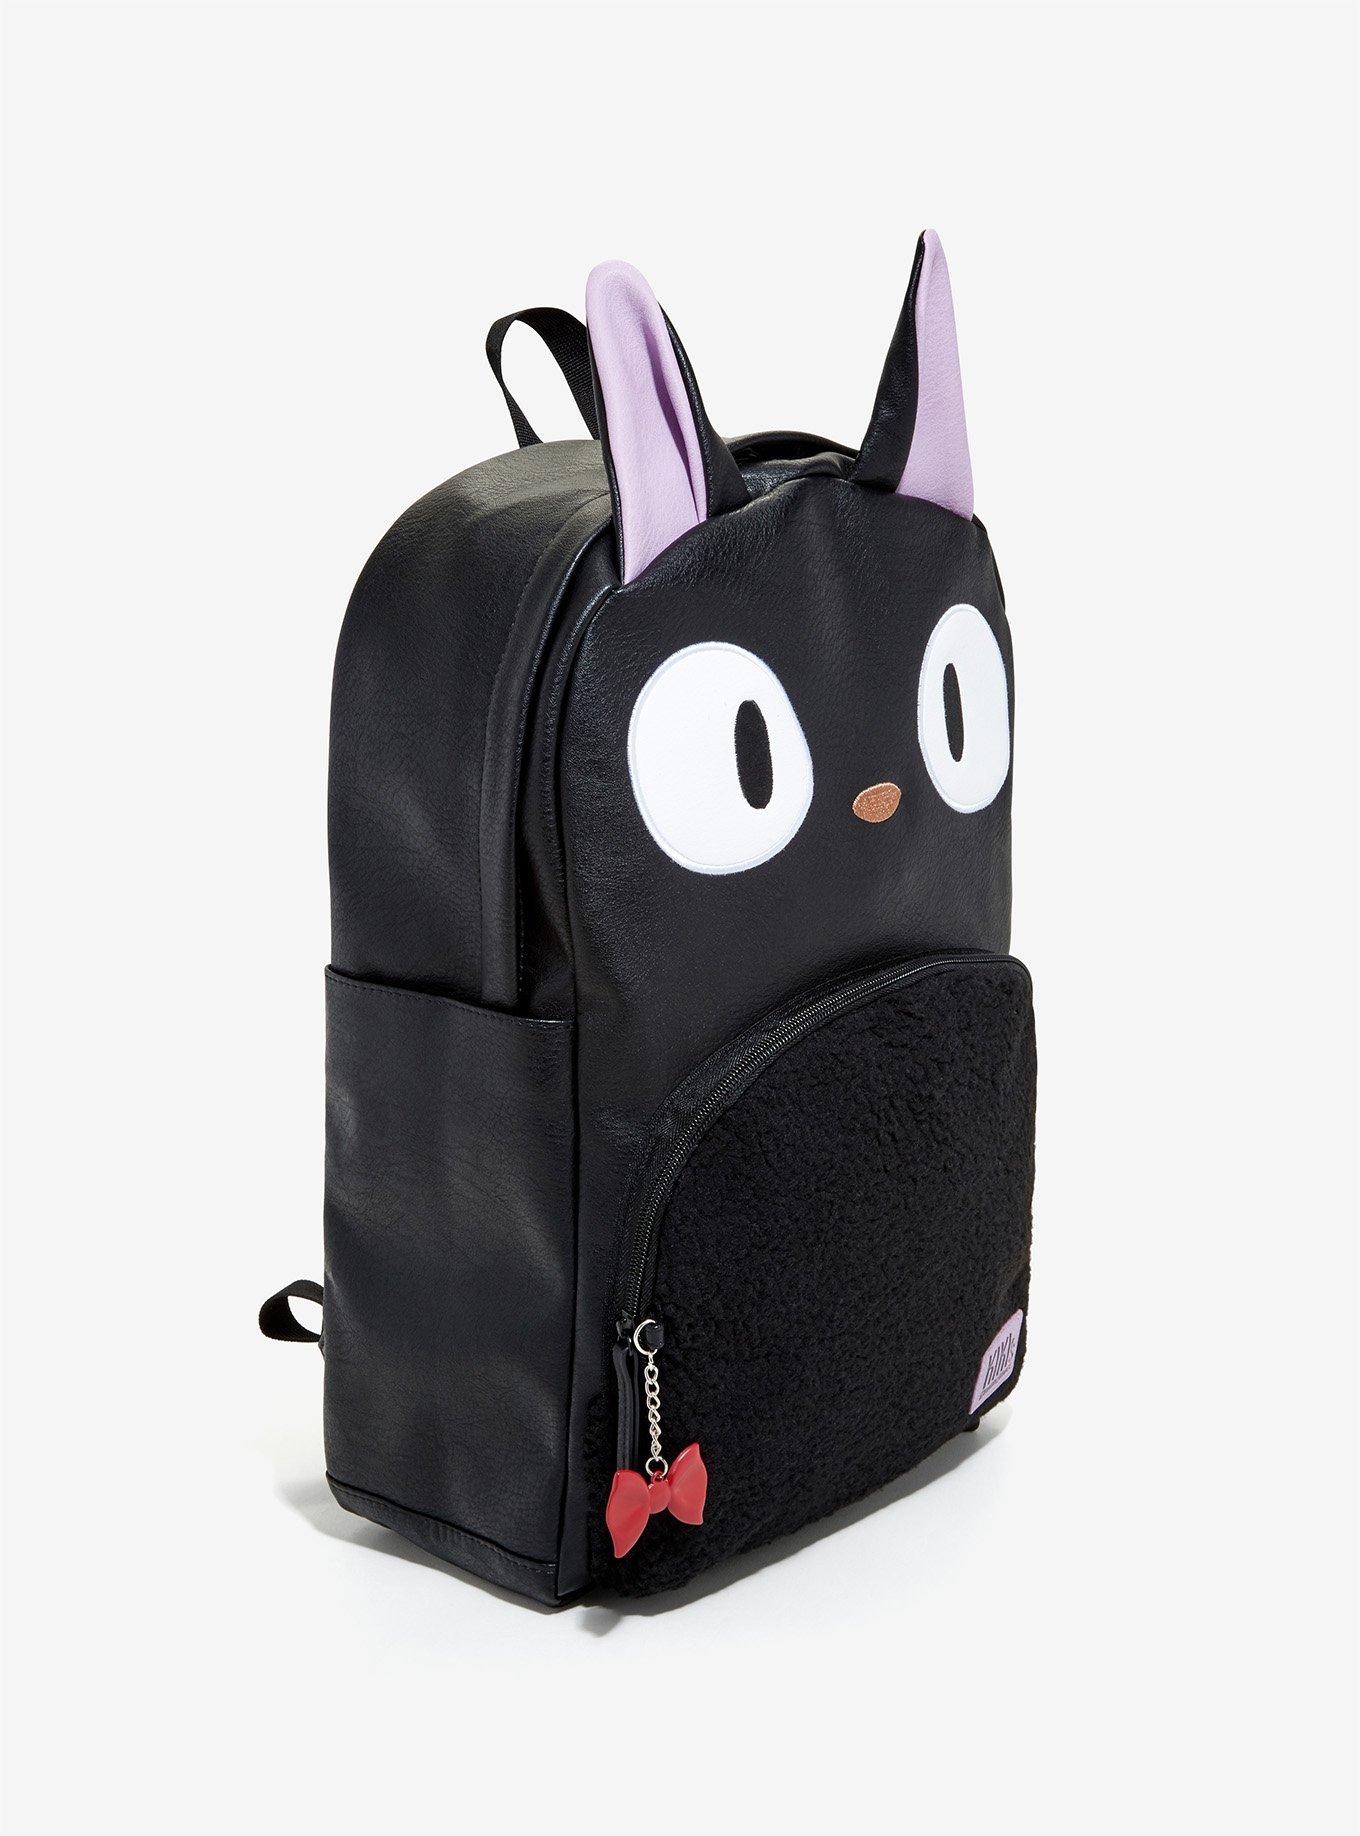 Studio Ghibli Kiki's Delivery Service Jiji Backpack, , alternate